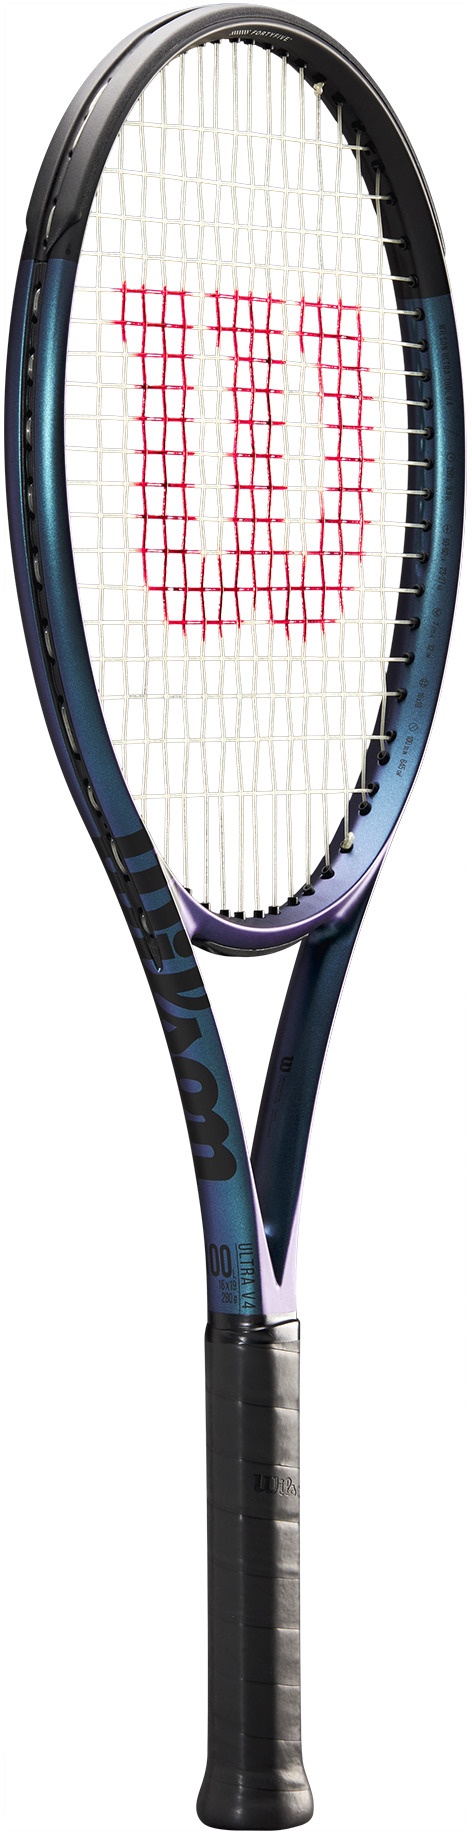 Енергична ракета за тенис